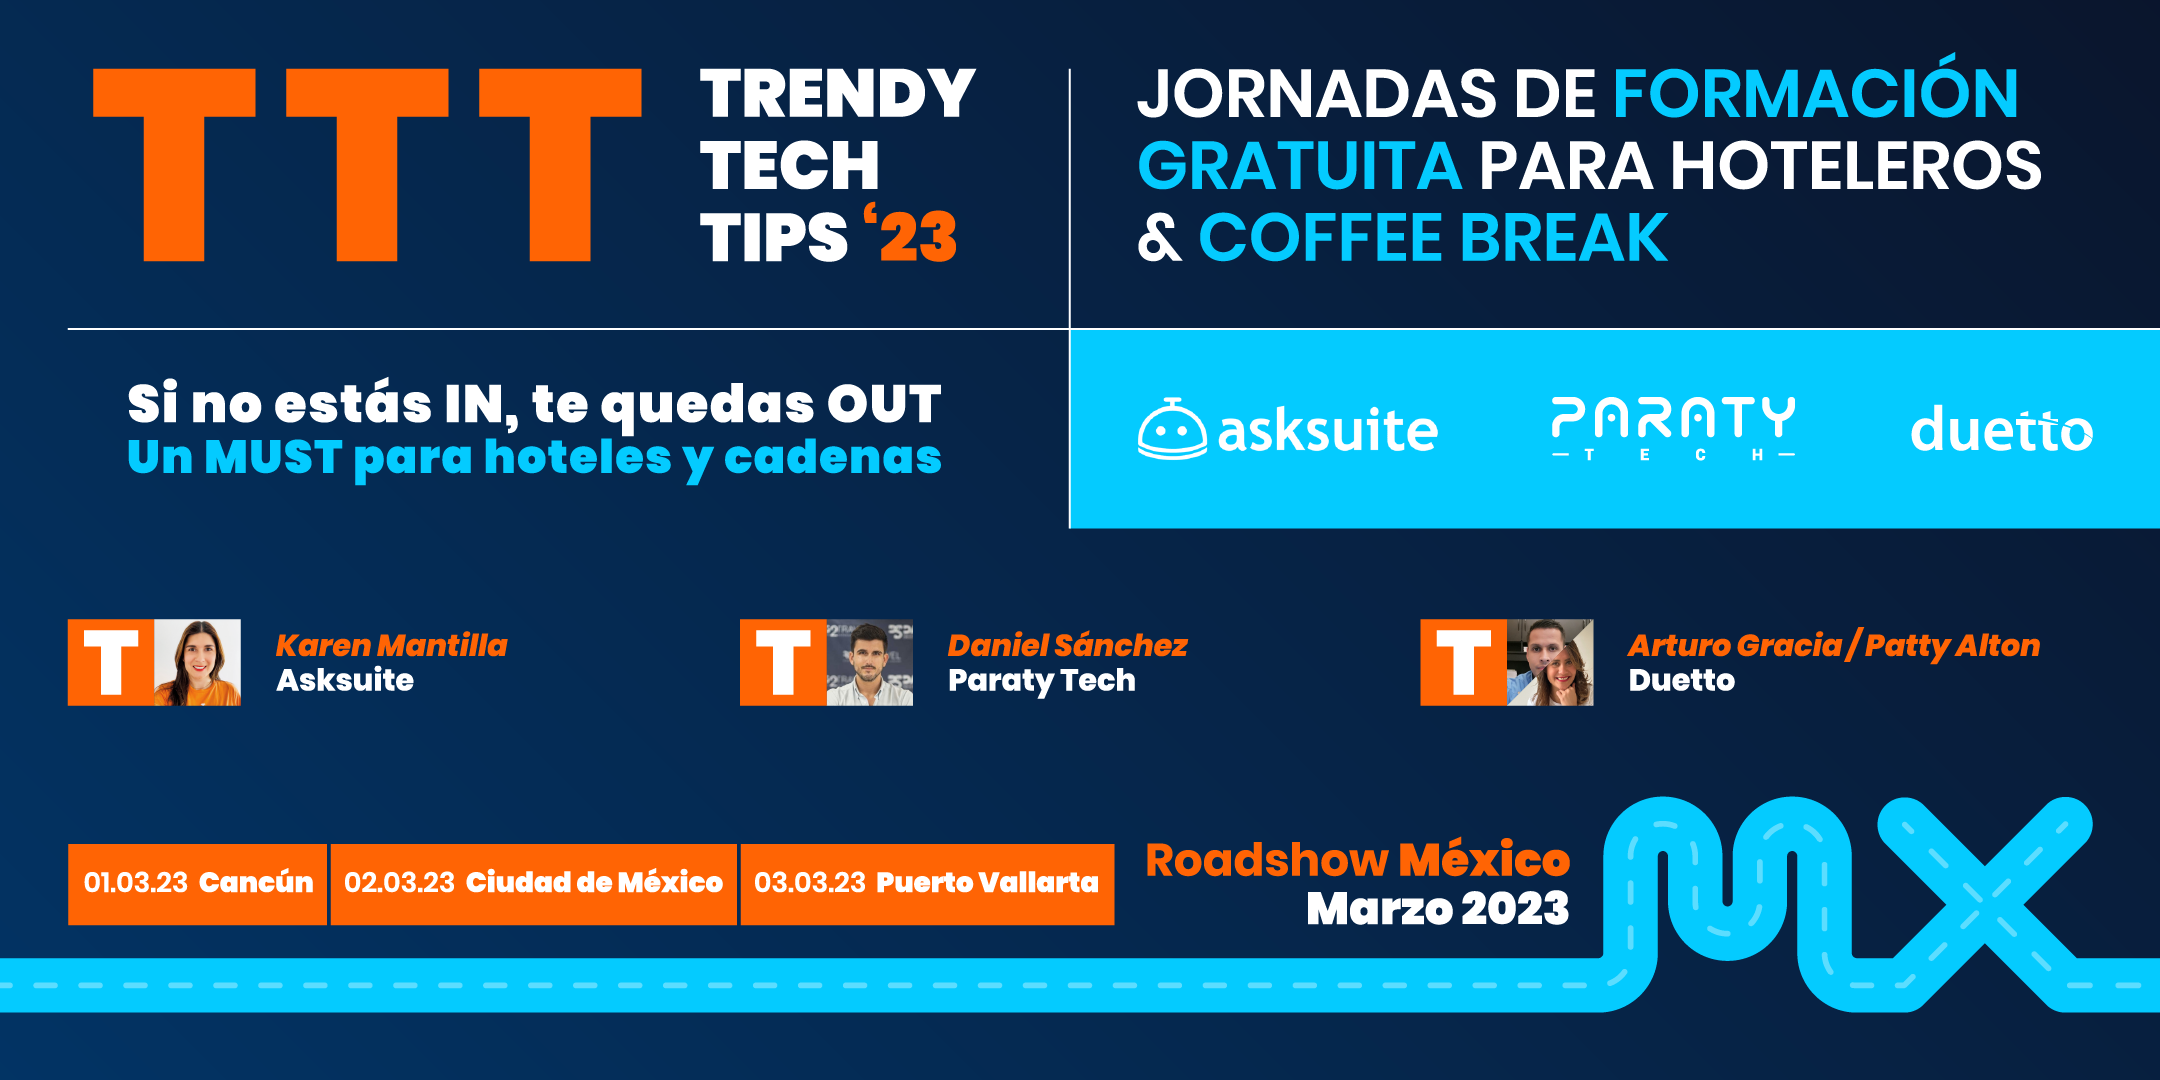 Paraty Tech, Asksuite y Duetto ofrecerán formación gratuita para hoteleros en distintas ciudades de México la primera semana de marzo